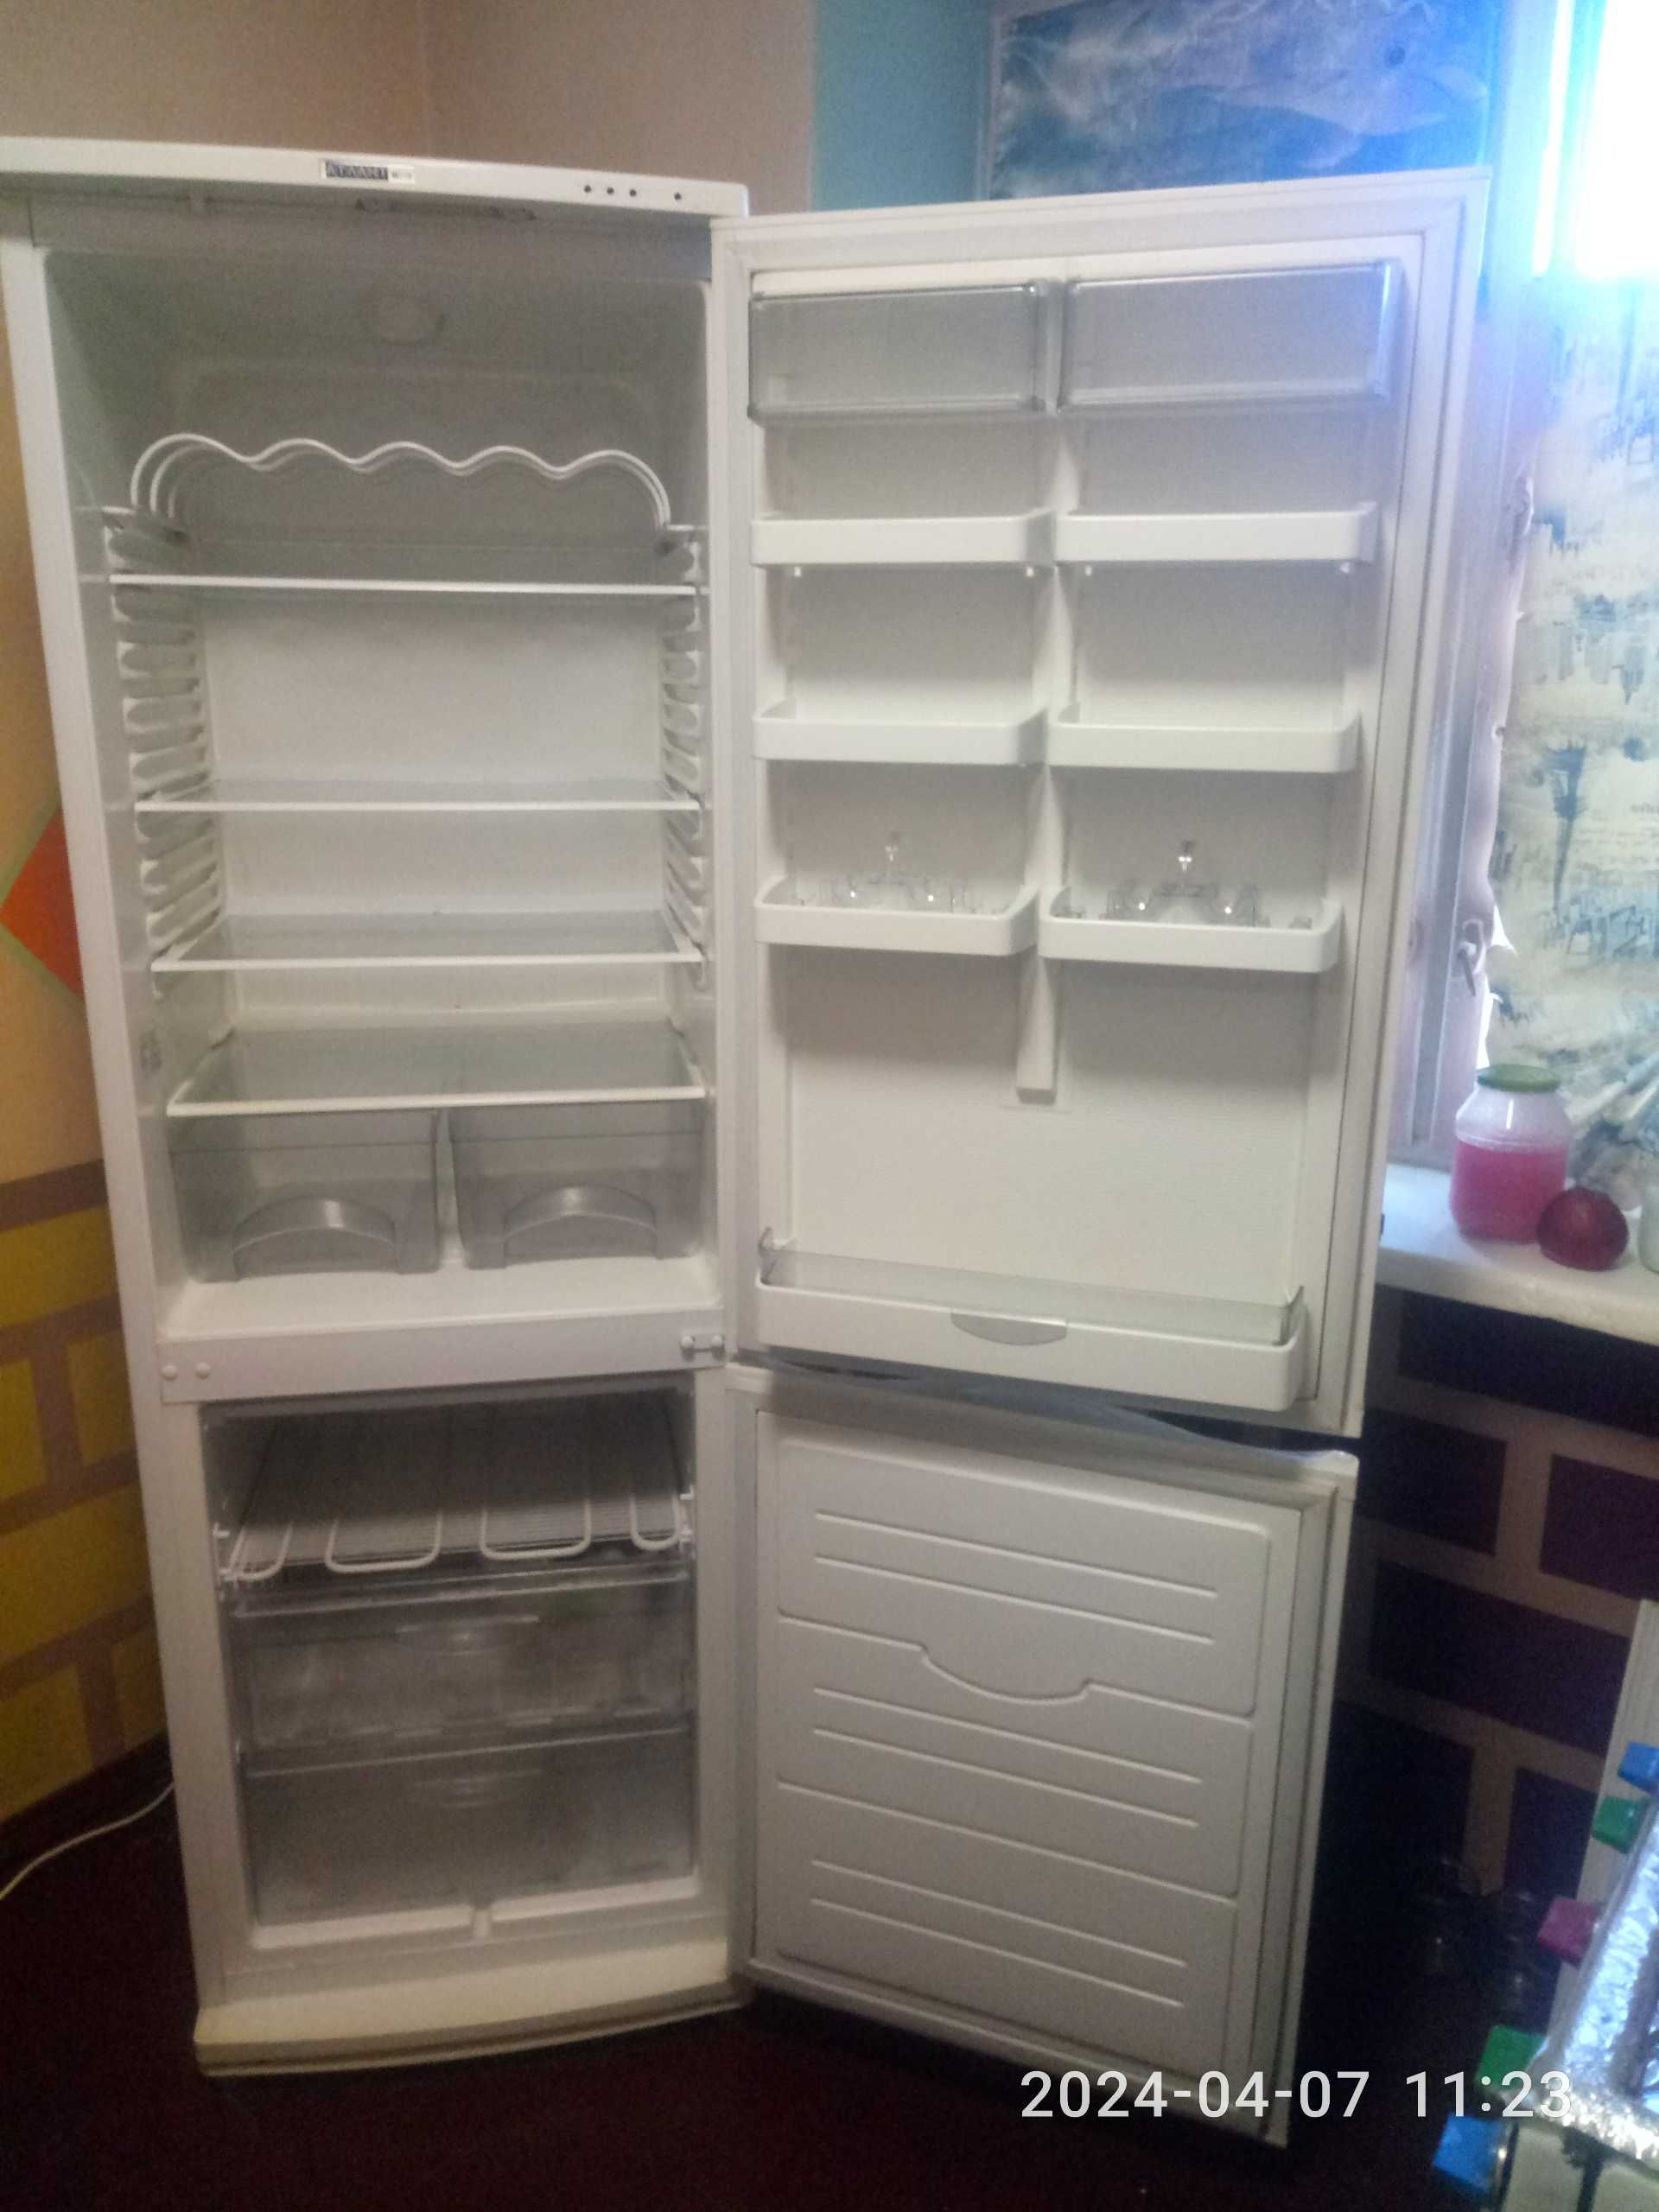 Холодильник Atlant МХМ 6021-031 двухкамерный - 2 компрессора.